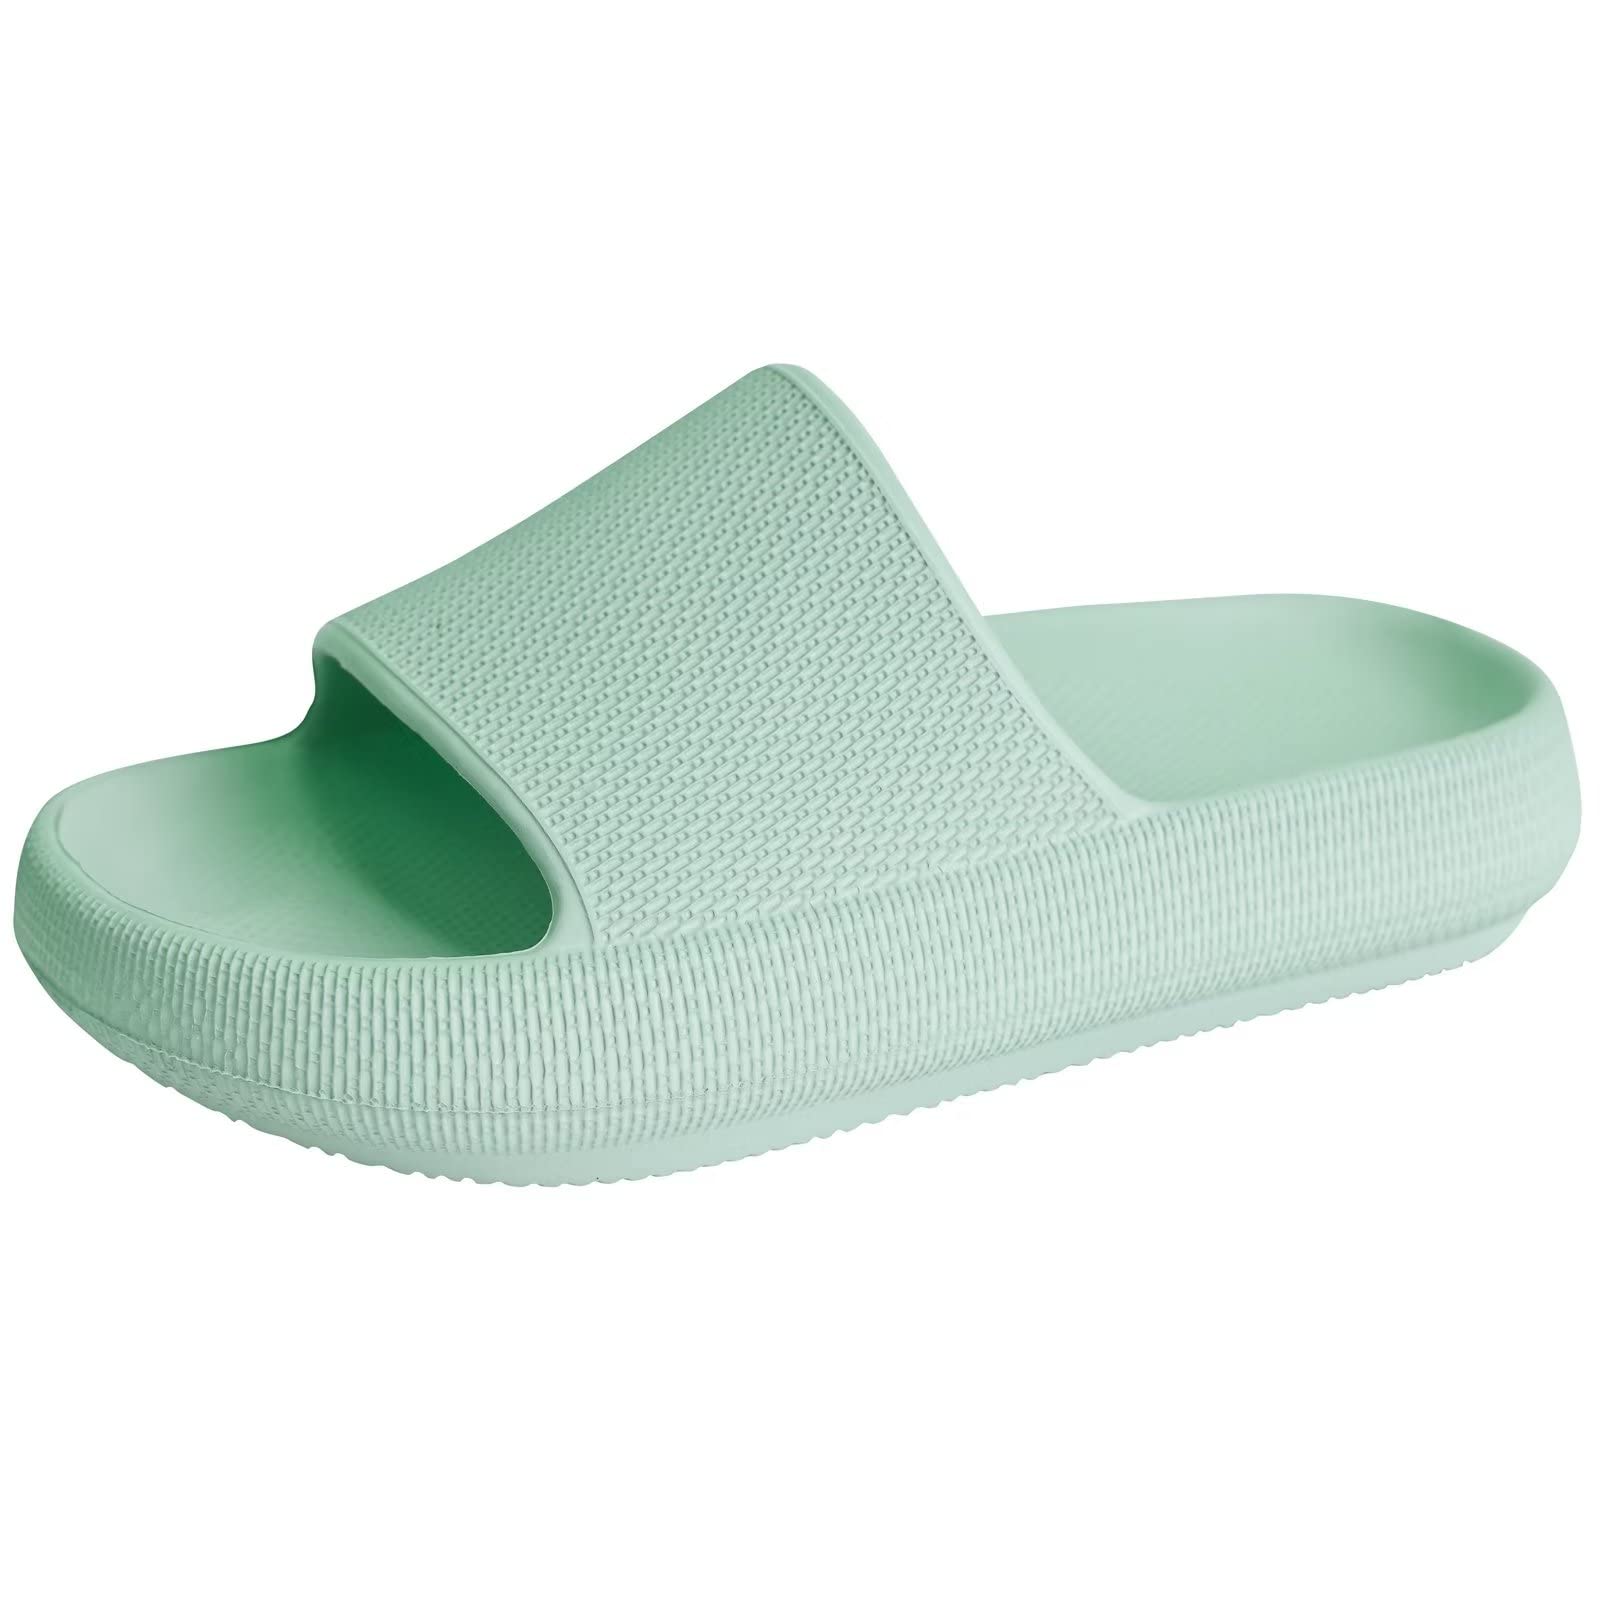 KOUECI Kids Cloud Slides Boys Girls Pillow Slides Slip on Shower Slides Non-slip Summer Beach Pool Shoes